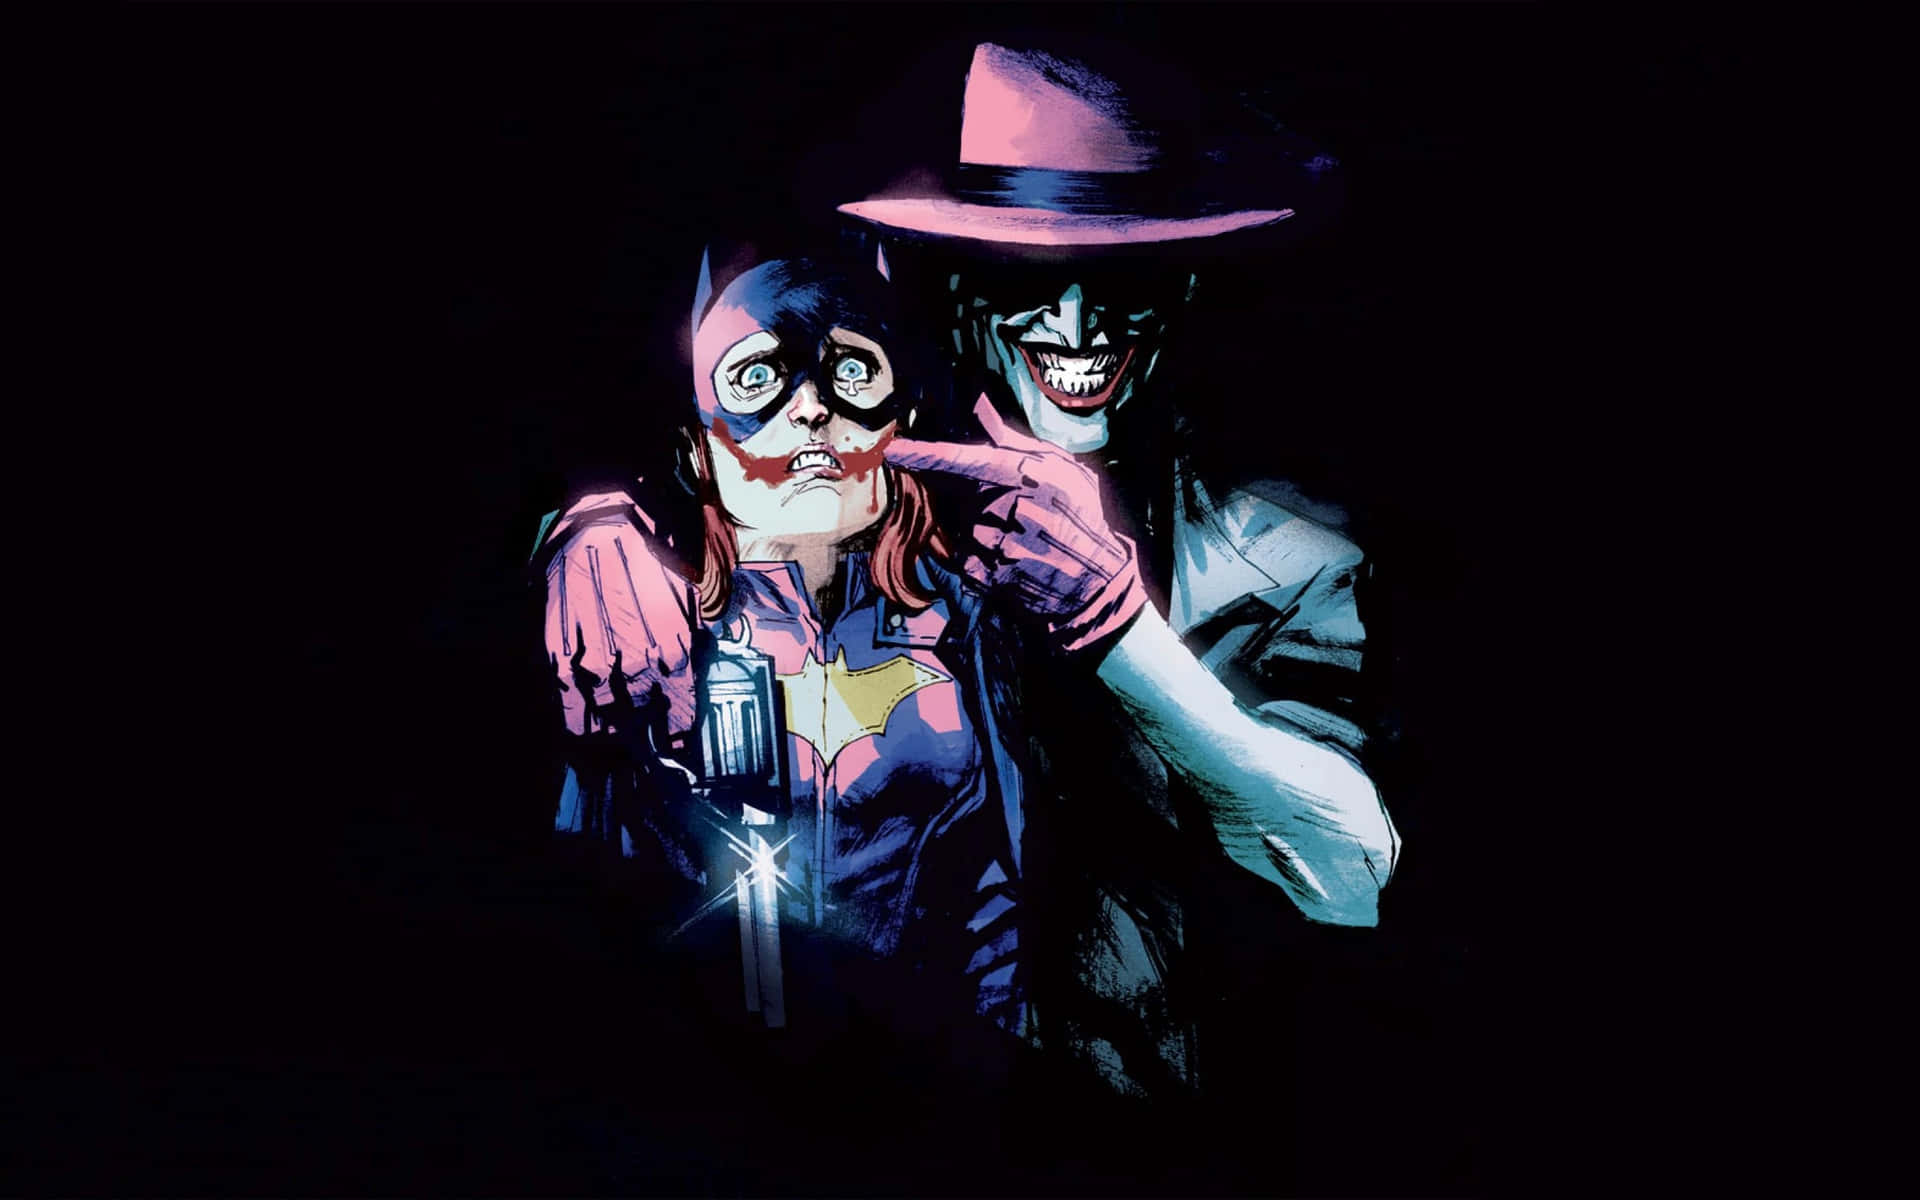 Bildden Brottslige Clownprinsen, Joker Från Dc Comics. Wallpaper